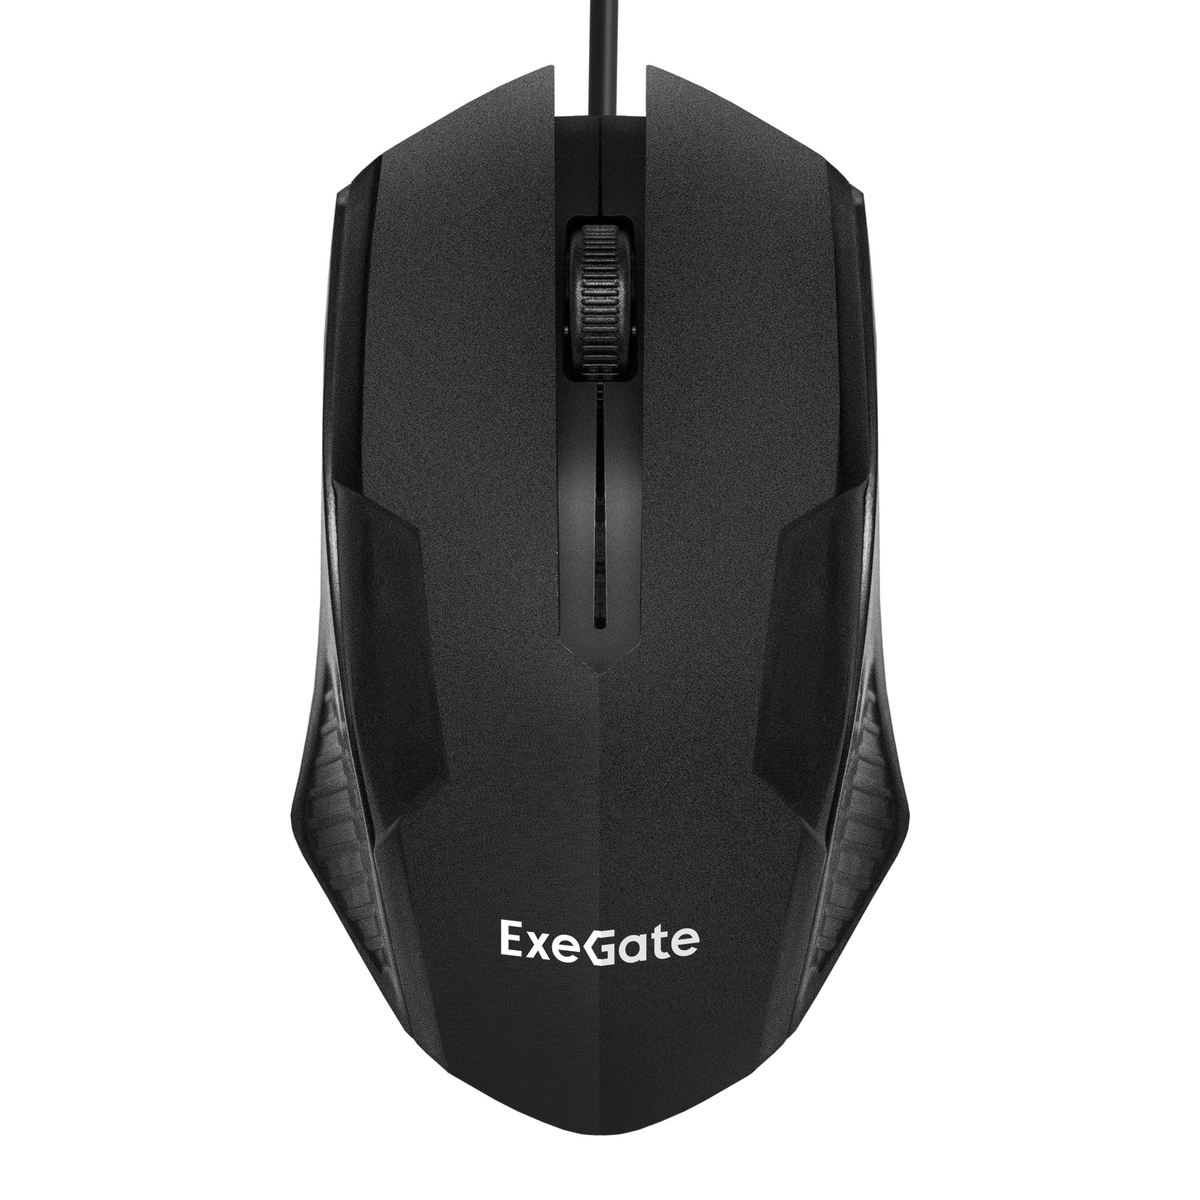 Мышь ExeGate Professional Standard SH-9025L (USB, оптическая, 1000dpi, 3 кнопки и колесо прокрутки, длина кабеля 2м, черная)